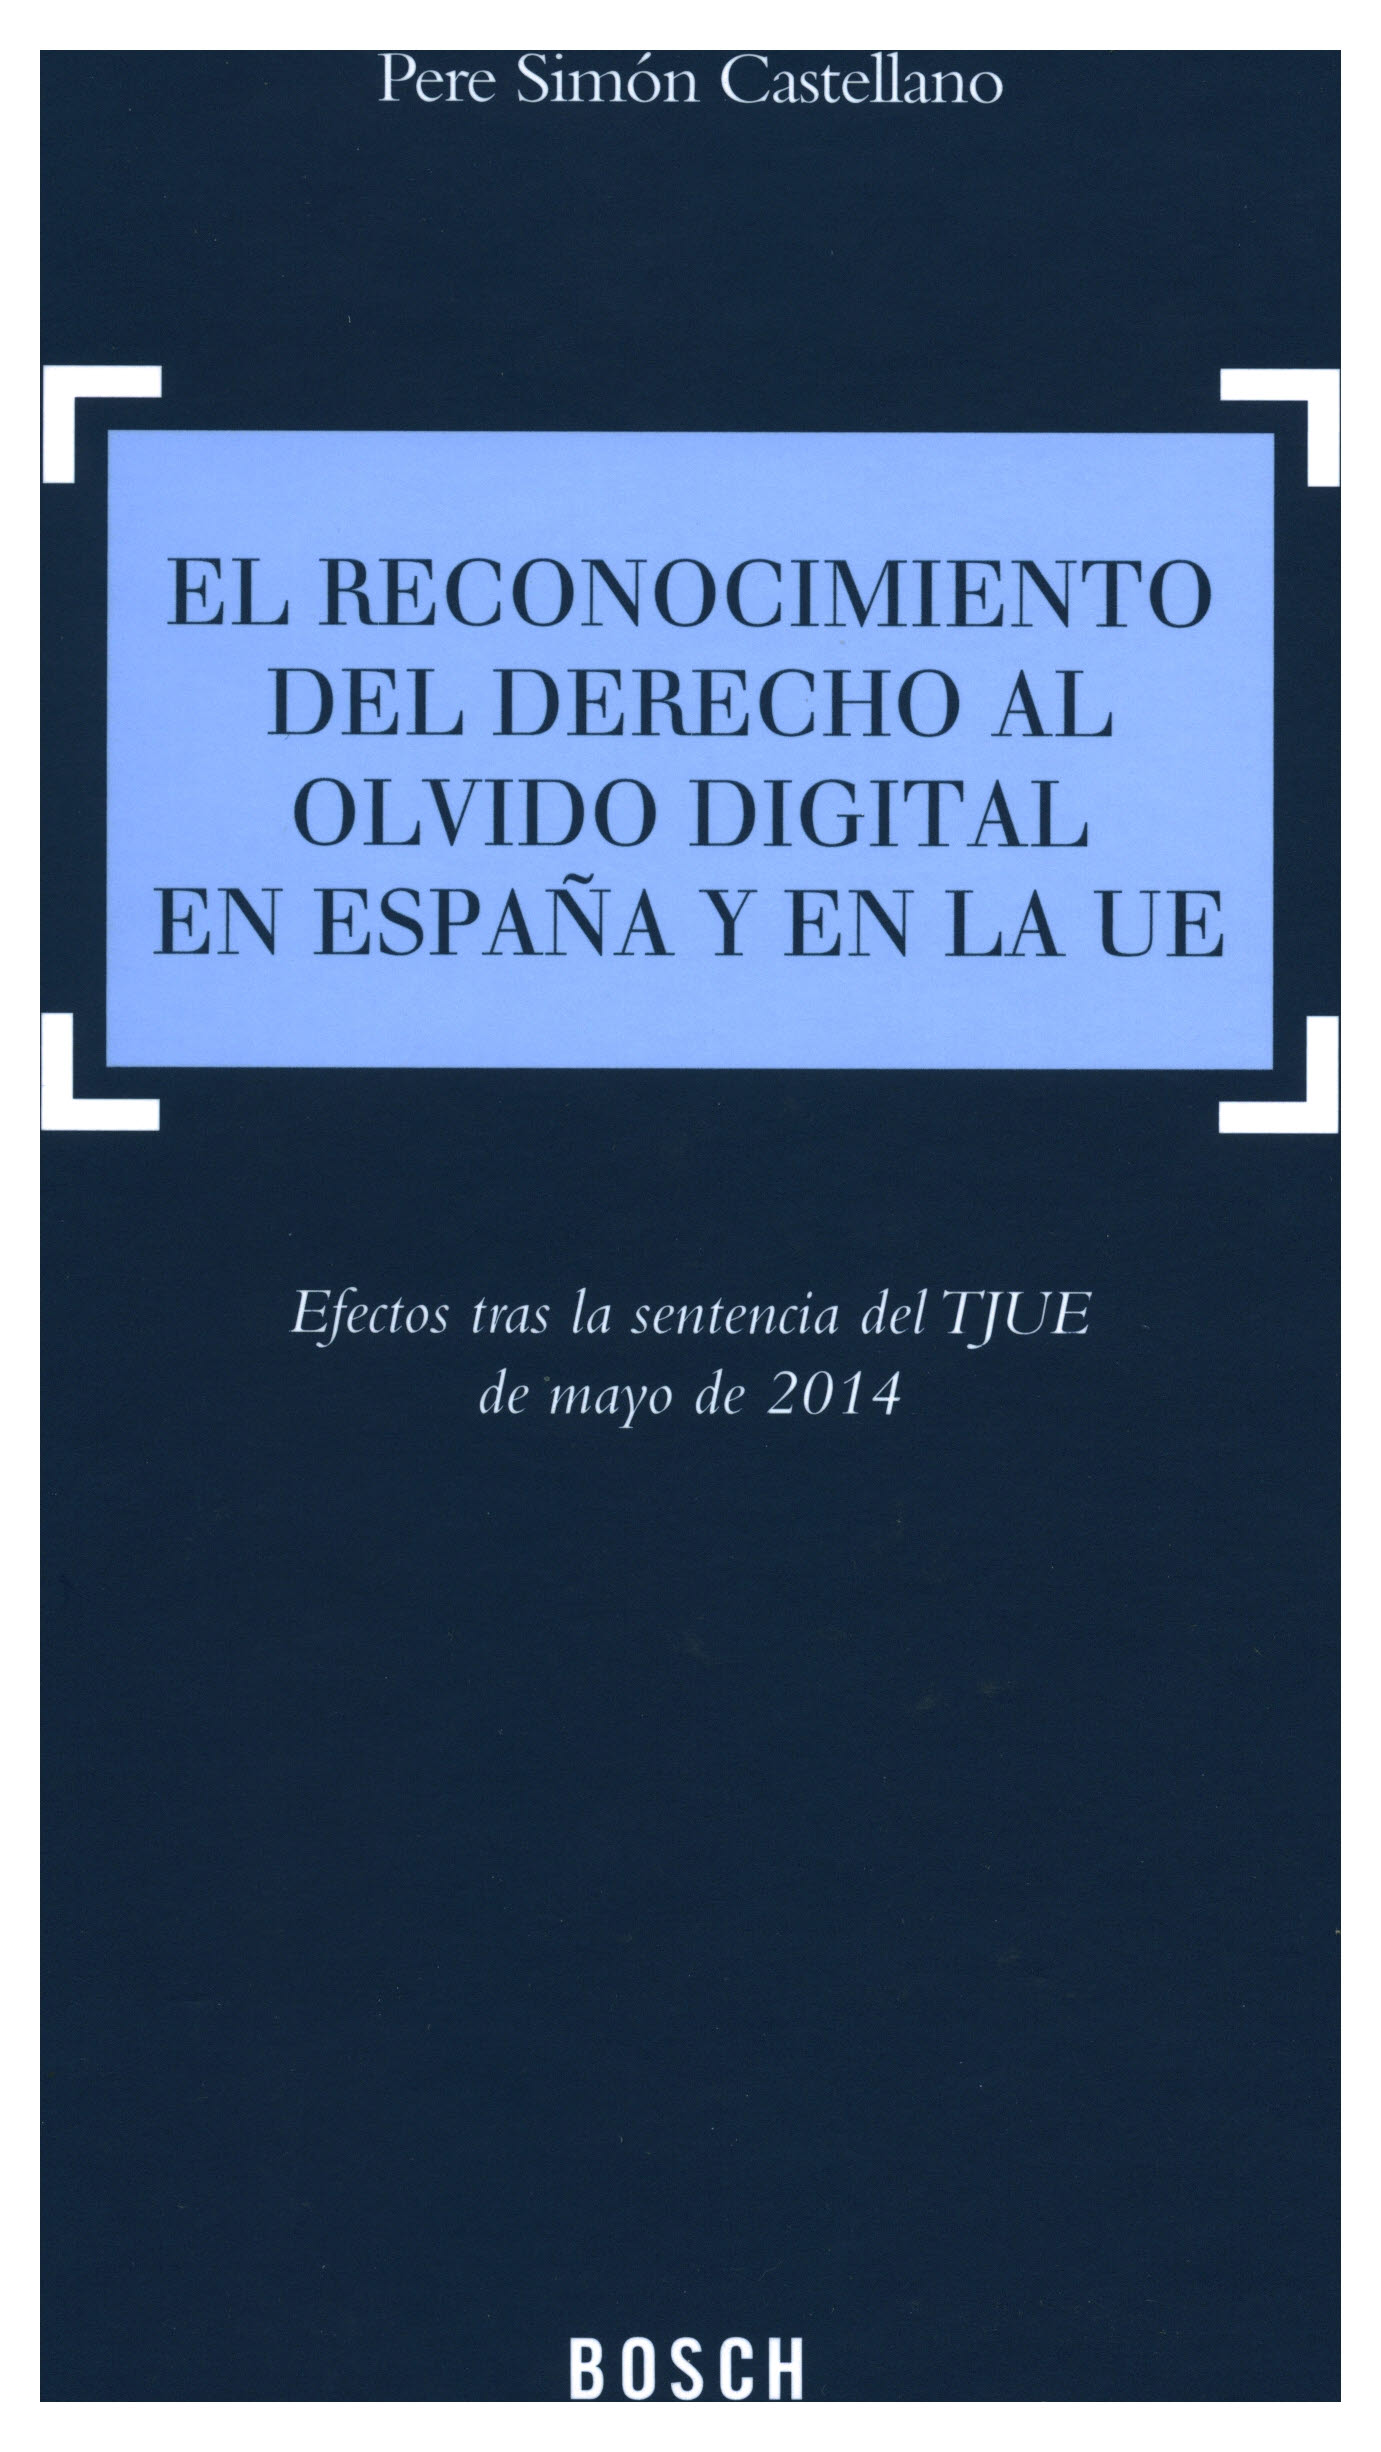 El reconocimiento del derecho al olvido digital en España y en la UE. Efectos tras la sentencia del TJUE de mayo de 2014